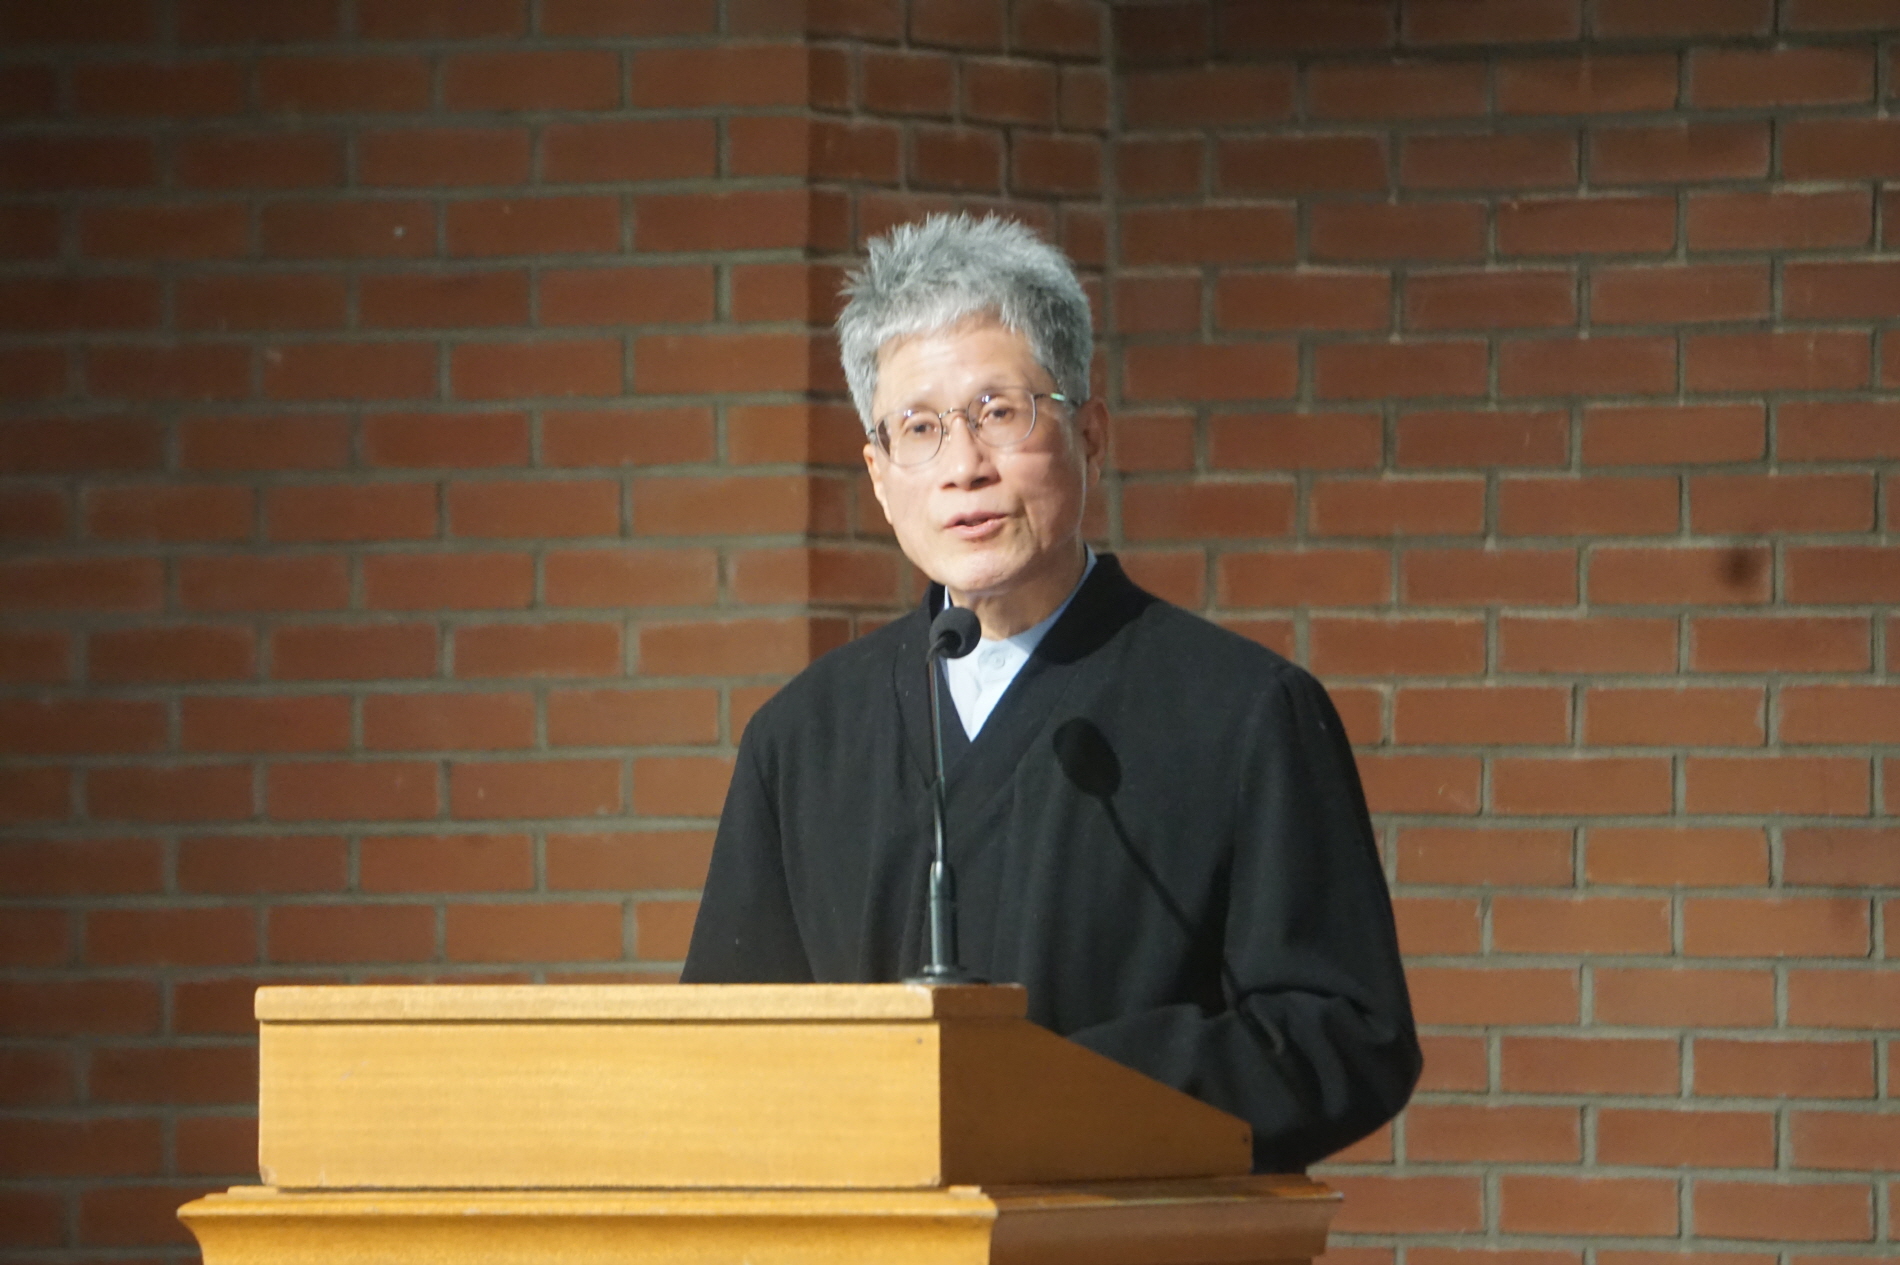 한국기독교역사연구소 설립 40주년 기념 및 내한선교사사전 출간 감사예배